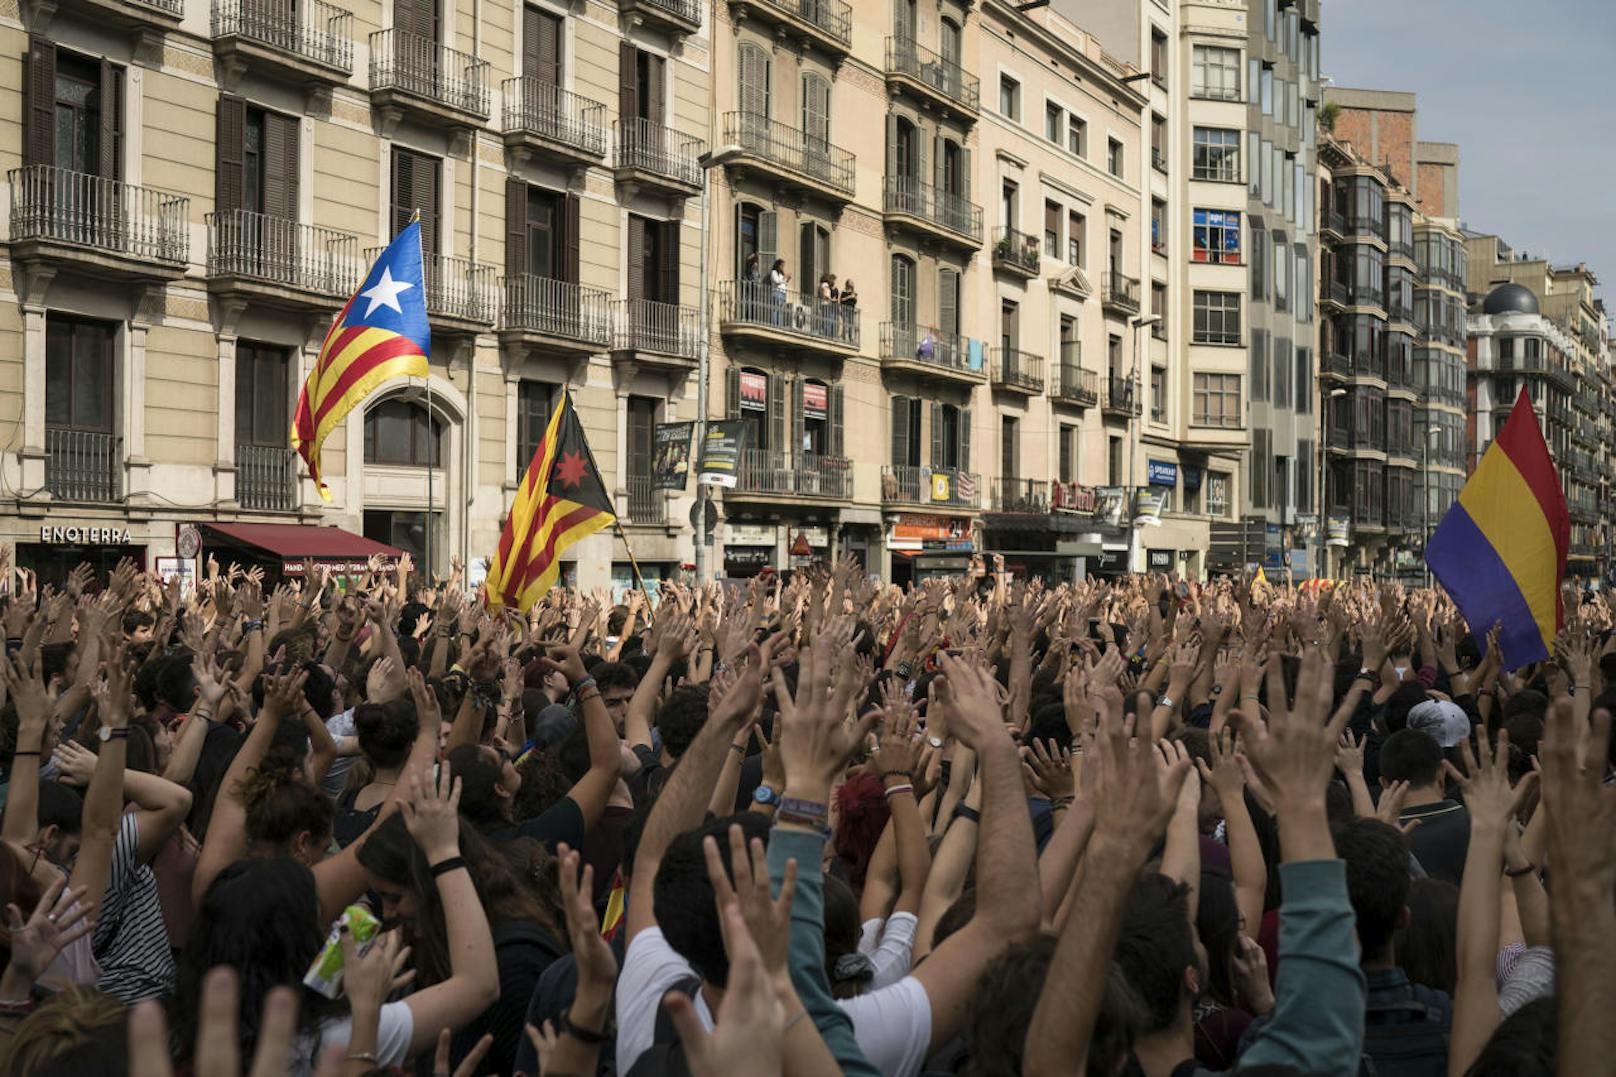 Zehntausende Demonstranten fanden sich am Dienstag allein in Barcelona ein, um gegen das Vorgehen der spanischen Zentralregierung zu demonstrieren. Als Zeichen des Protests klebten sie sich den Mund zu.